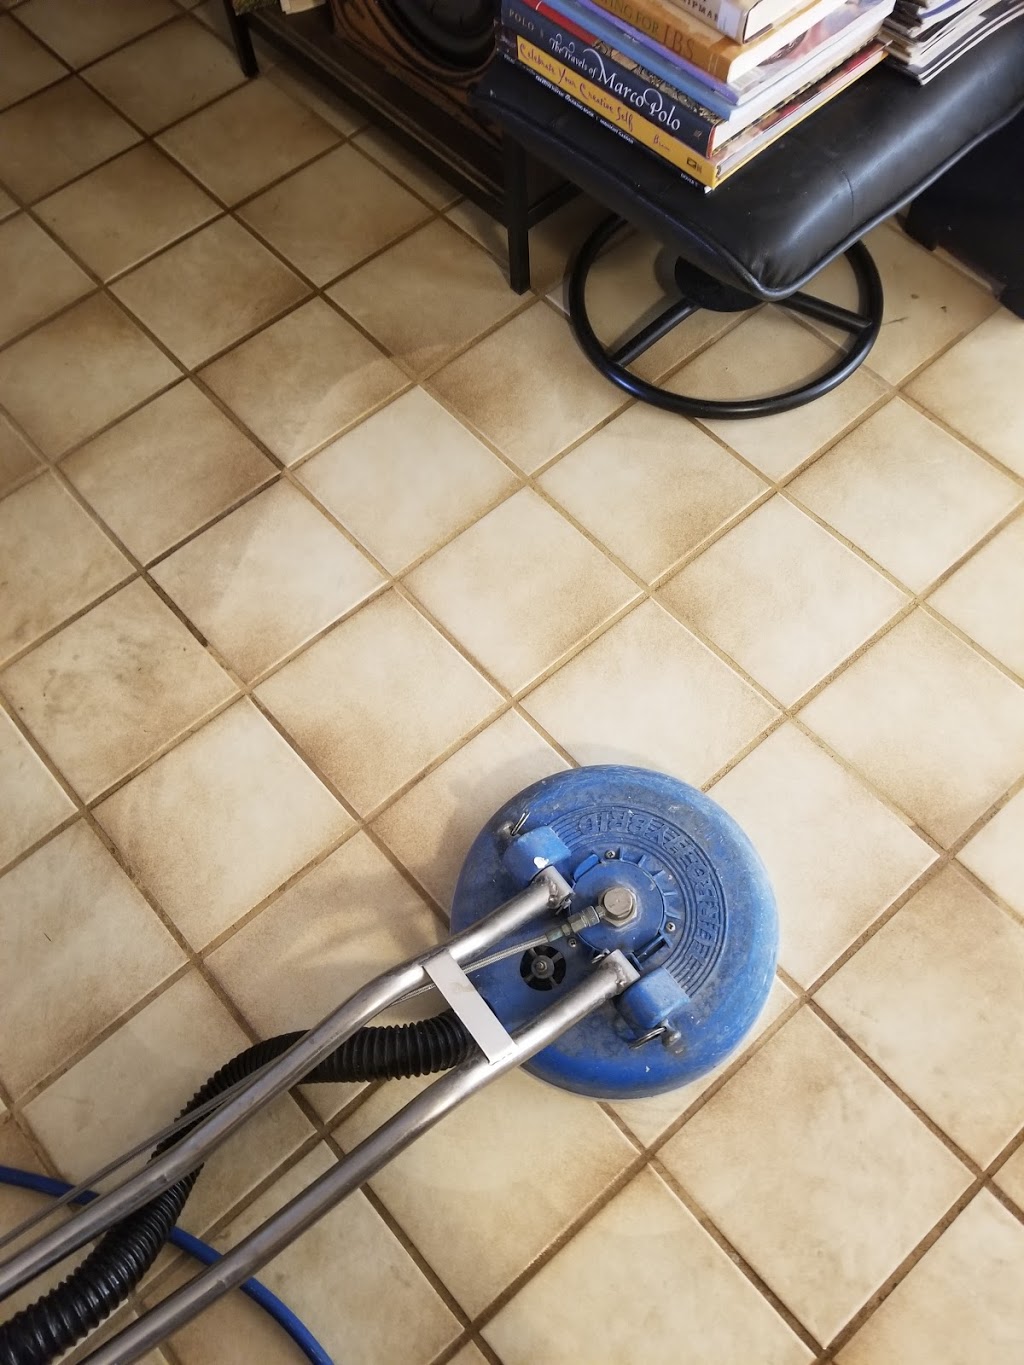 Combat Carpet & Tile Cleaning | 15665 W Mescal St, Surprise, AZ 85379, USA | Phone: (602) 405-3866